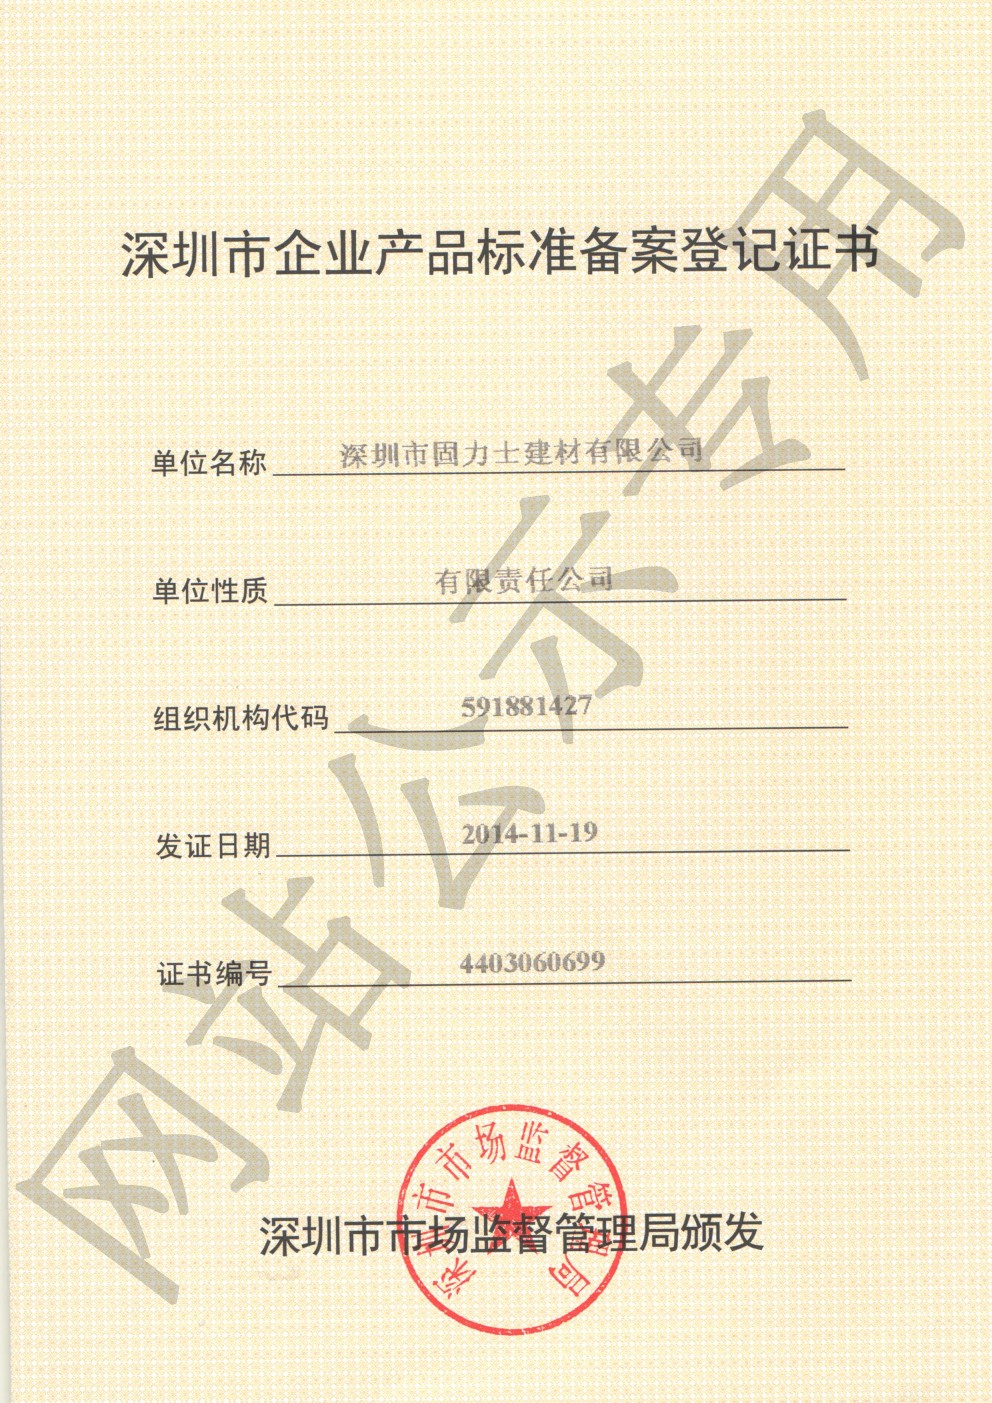 阿荣企业产品标准登记证书